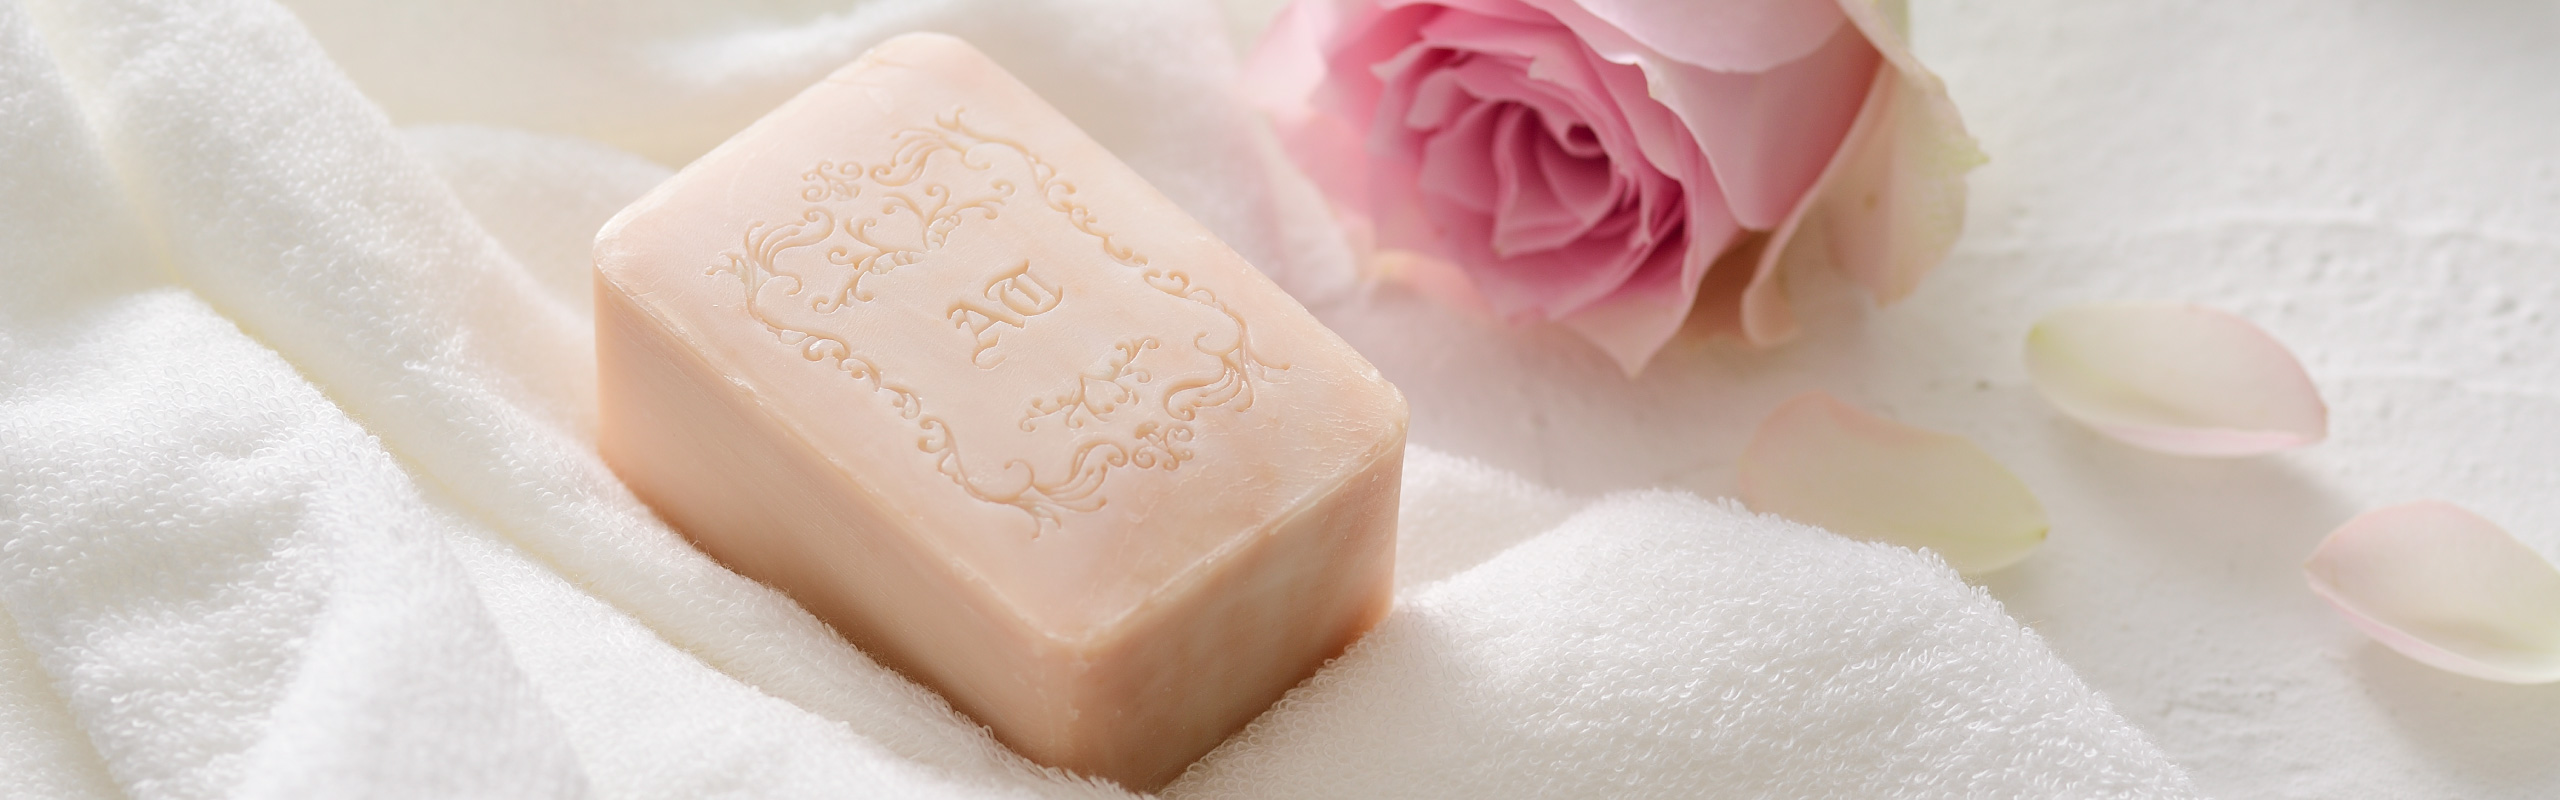 rose honey soap